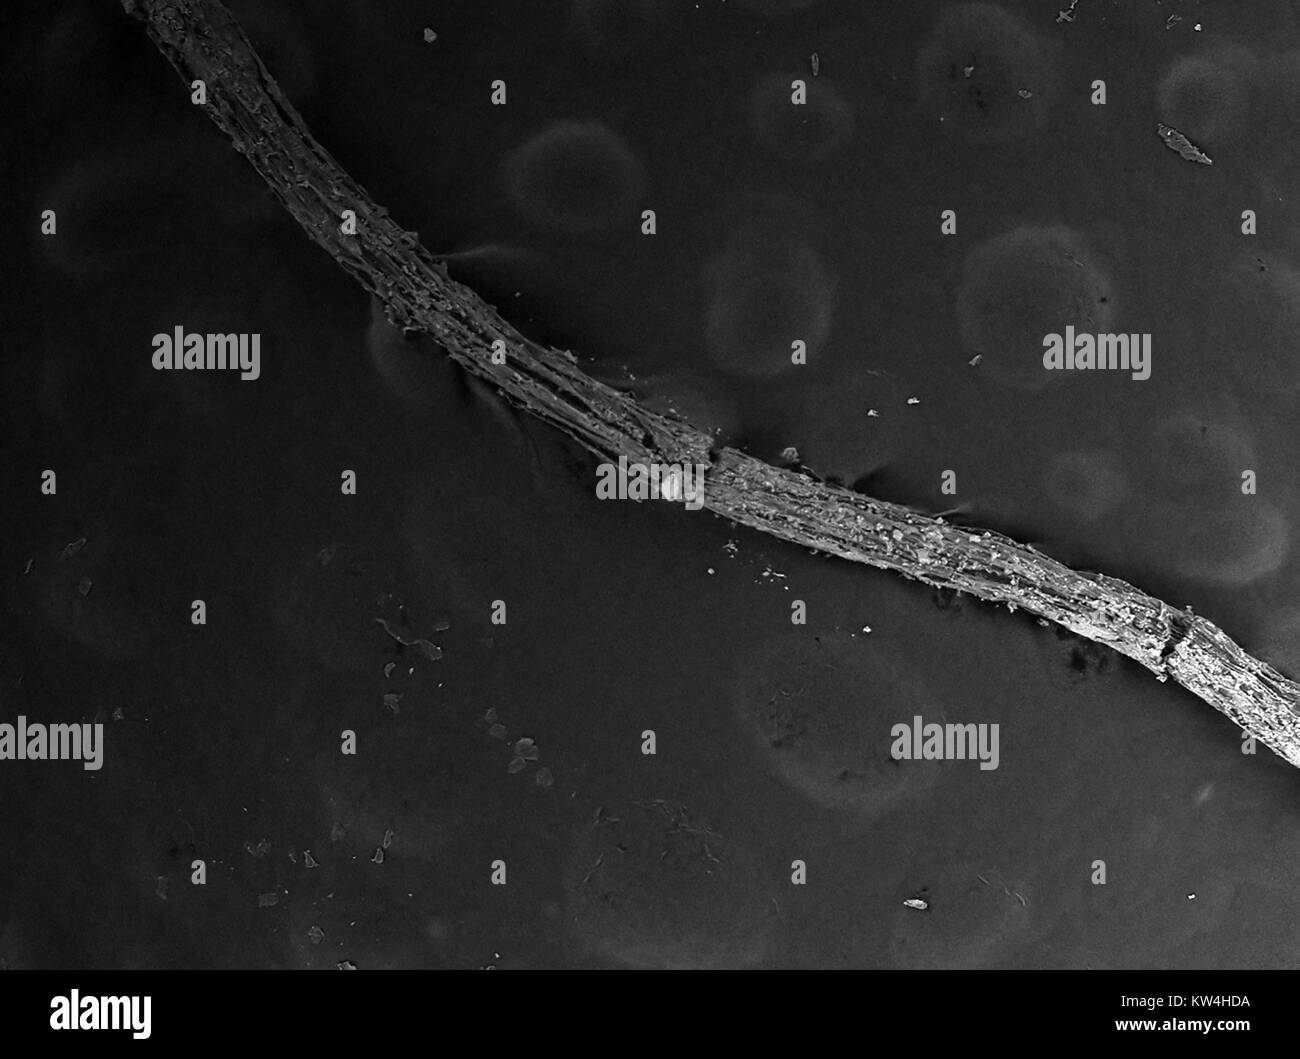 Rasterelektronenmikroskop (REM) Aufnahme einer Anlage root, mit Boden Ablagerungen sichtbar, bei einer Vergrößerung von 100 x, 2016. Stockfoto